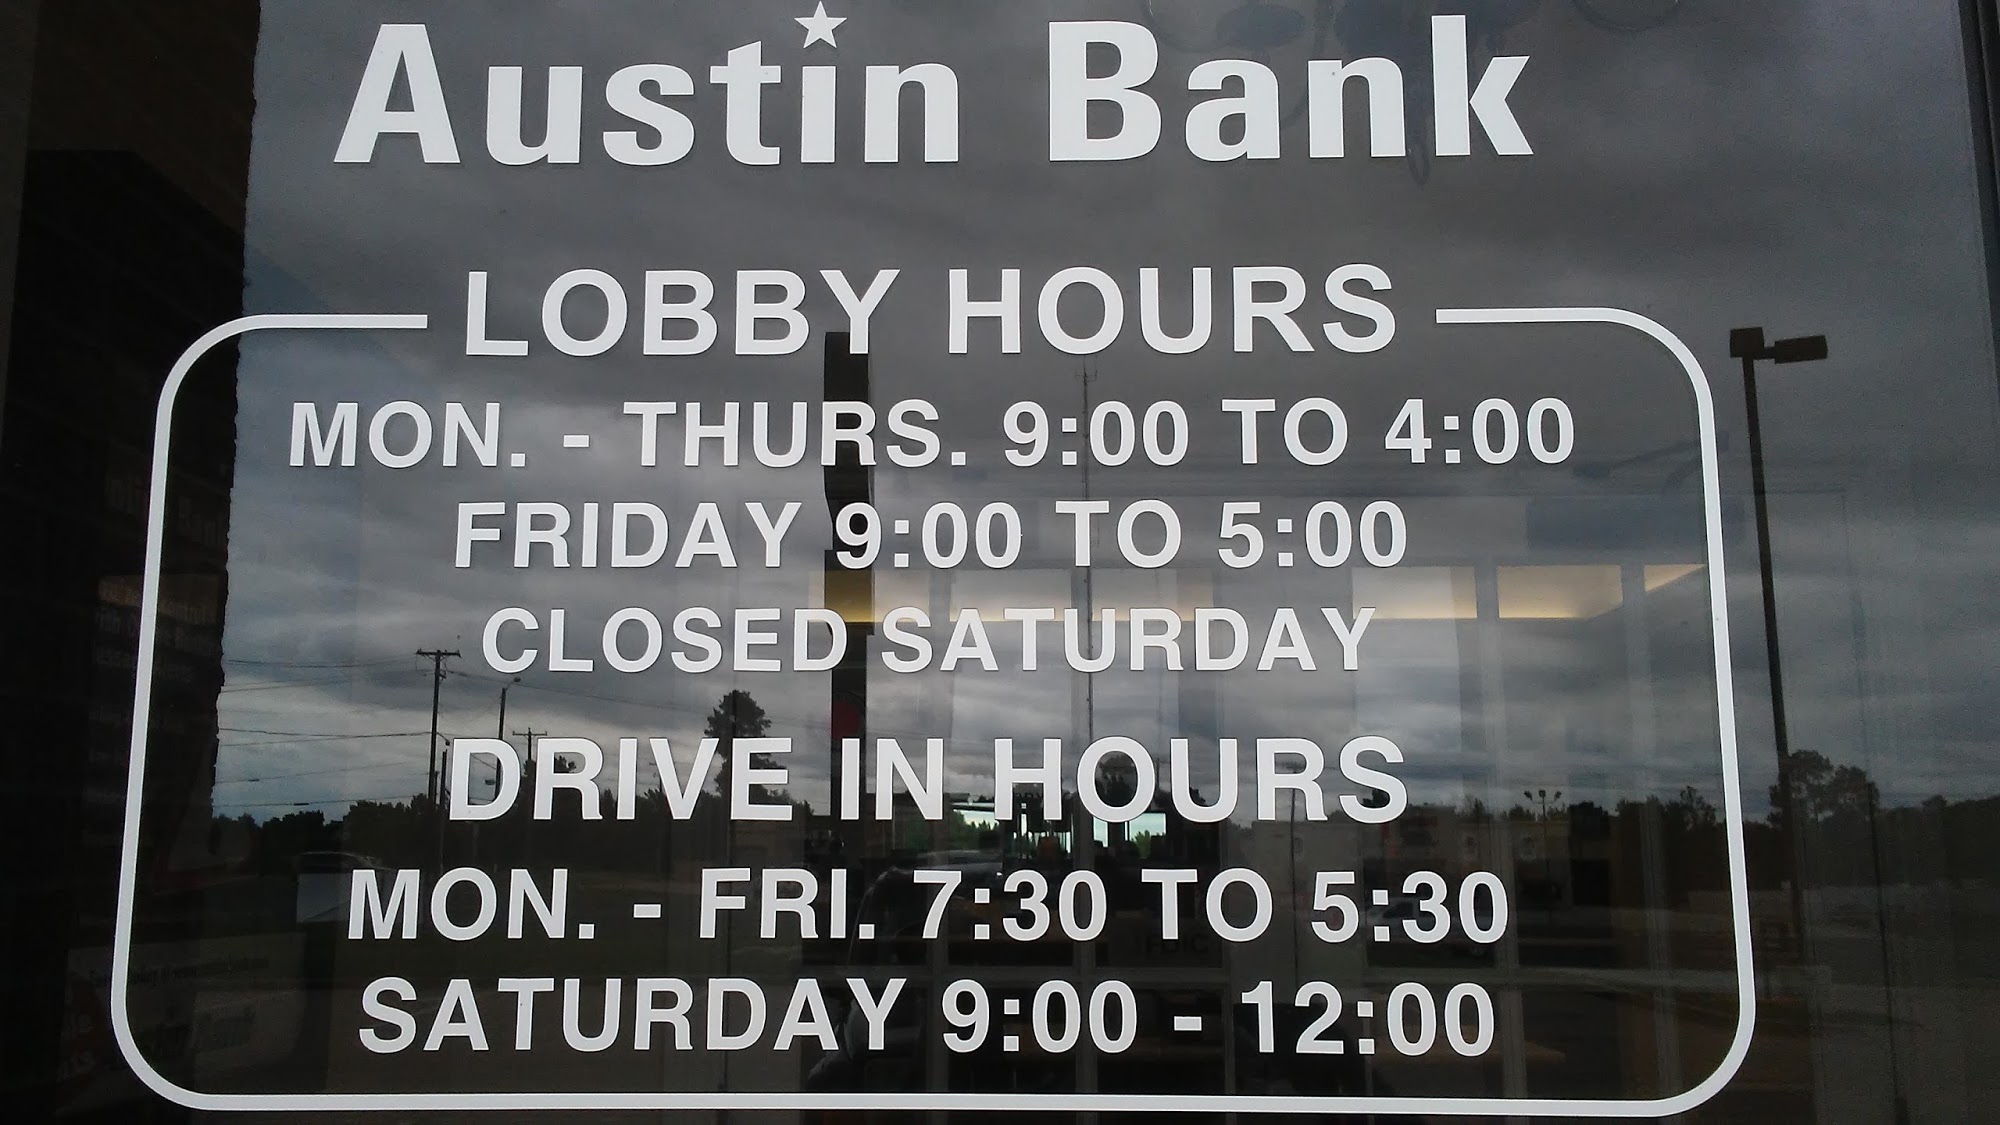 Austin Bank